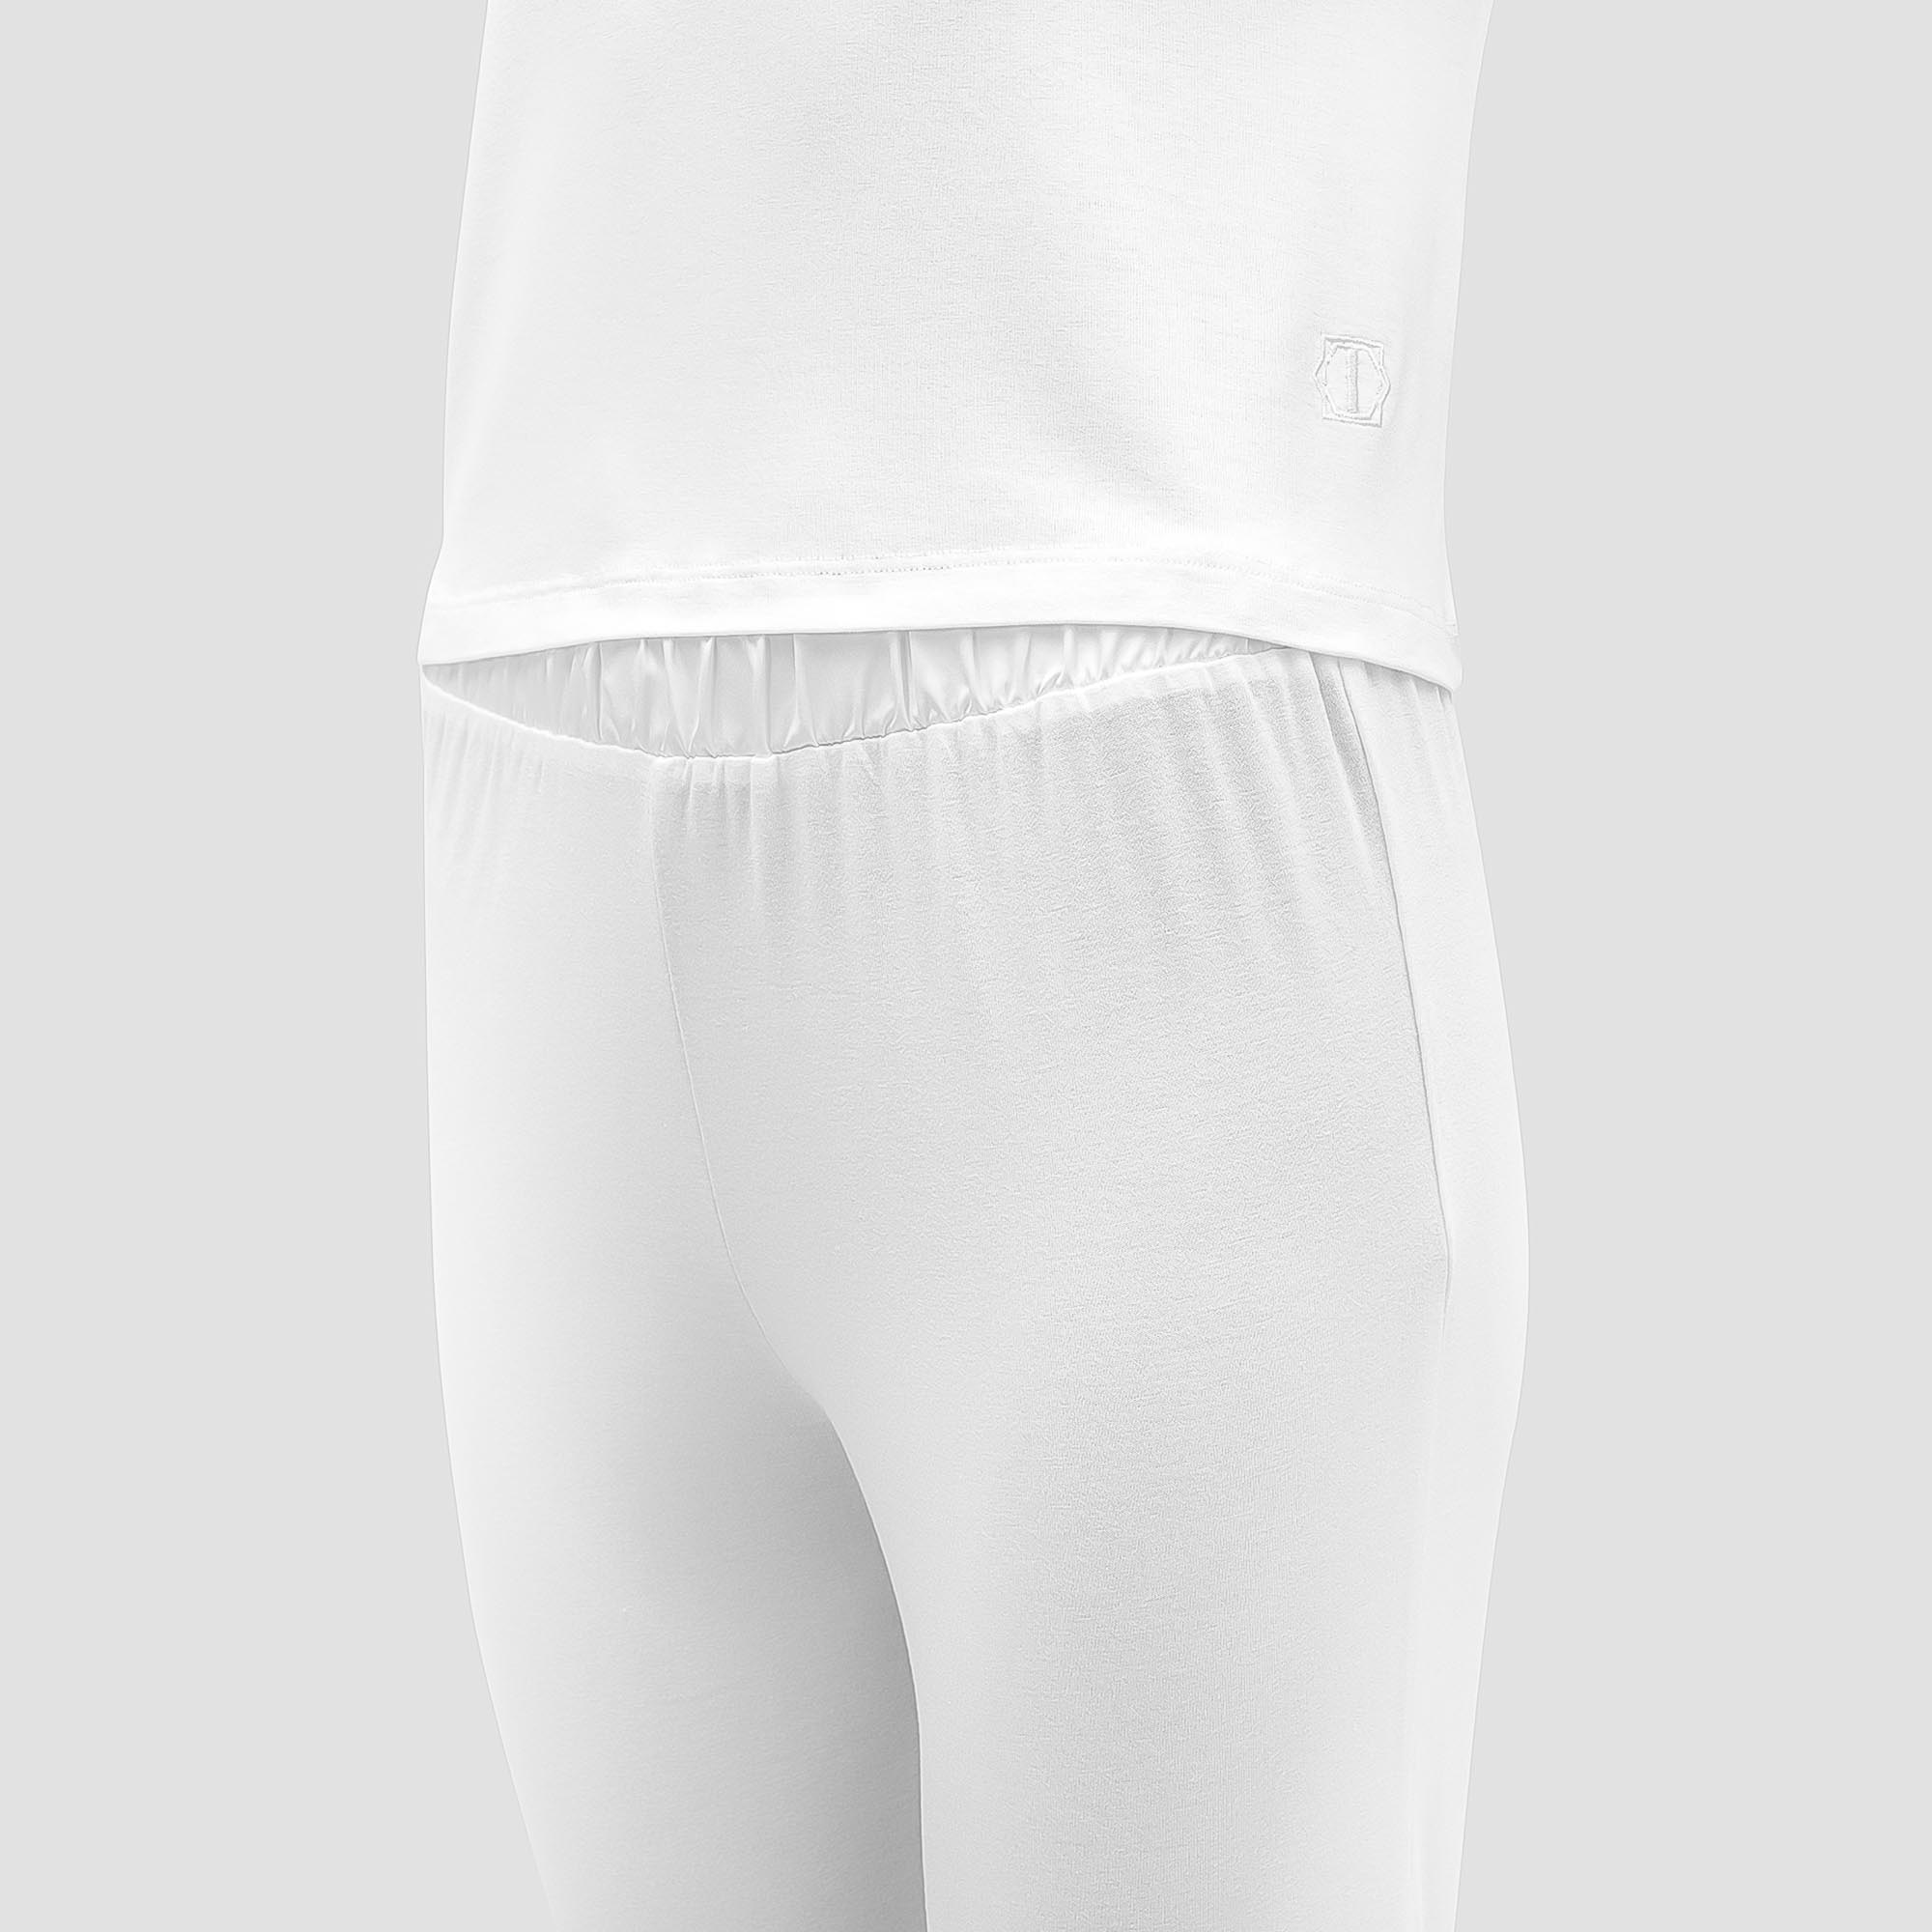 Пижама Togas Ингелла белая женская L(48) 2 предмета, цвет белый, размер L(48) - фото 2